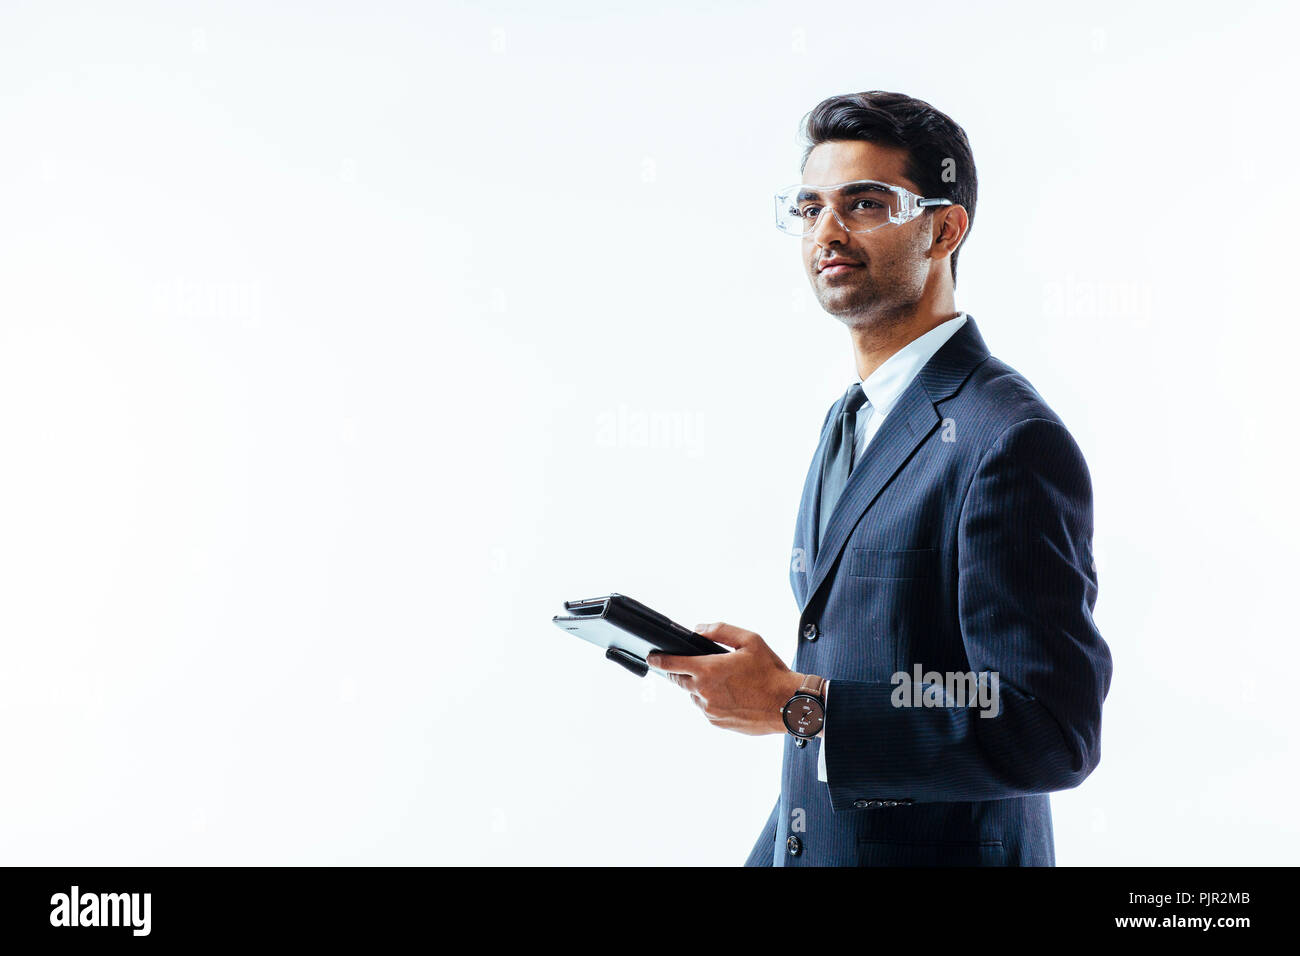 Retrato del hombre en traje de negocios la celebración de tableta electrónica pad y gafas protectoras mirando hacia arriba, aislado sobre fondo blanco studio Foto de stock